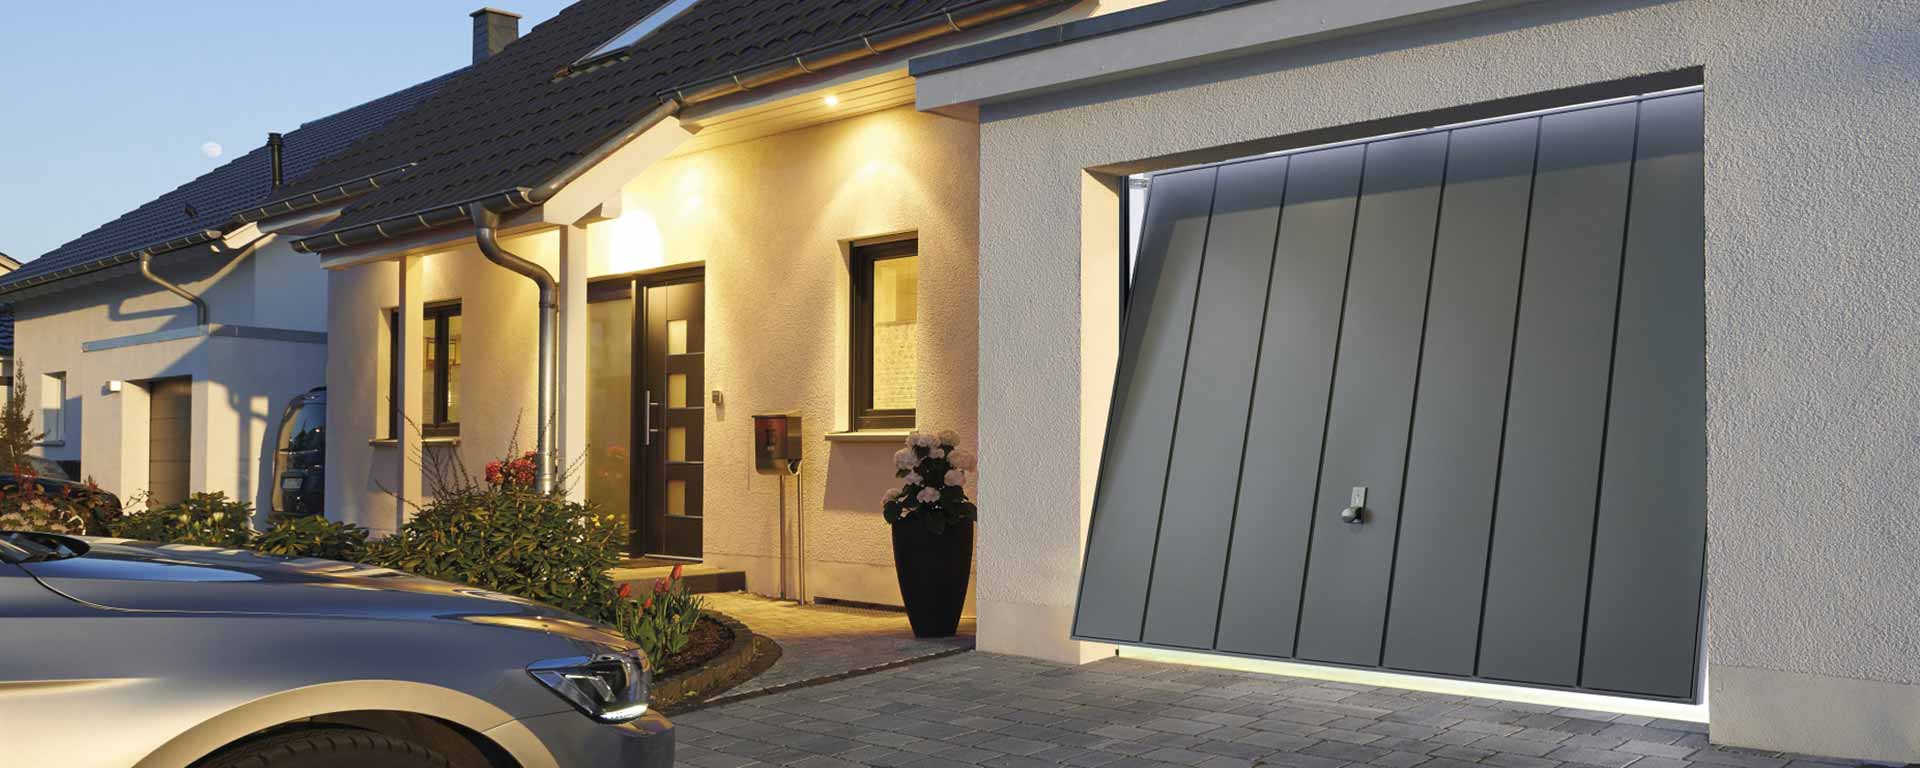 Estetika i funkcionalnost: Kako izabrati garažna vrata koja odgovaraju vašem stilu?